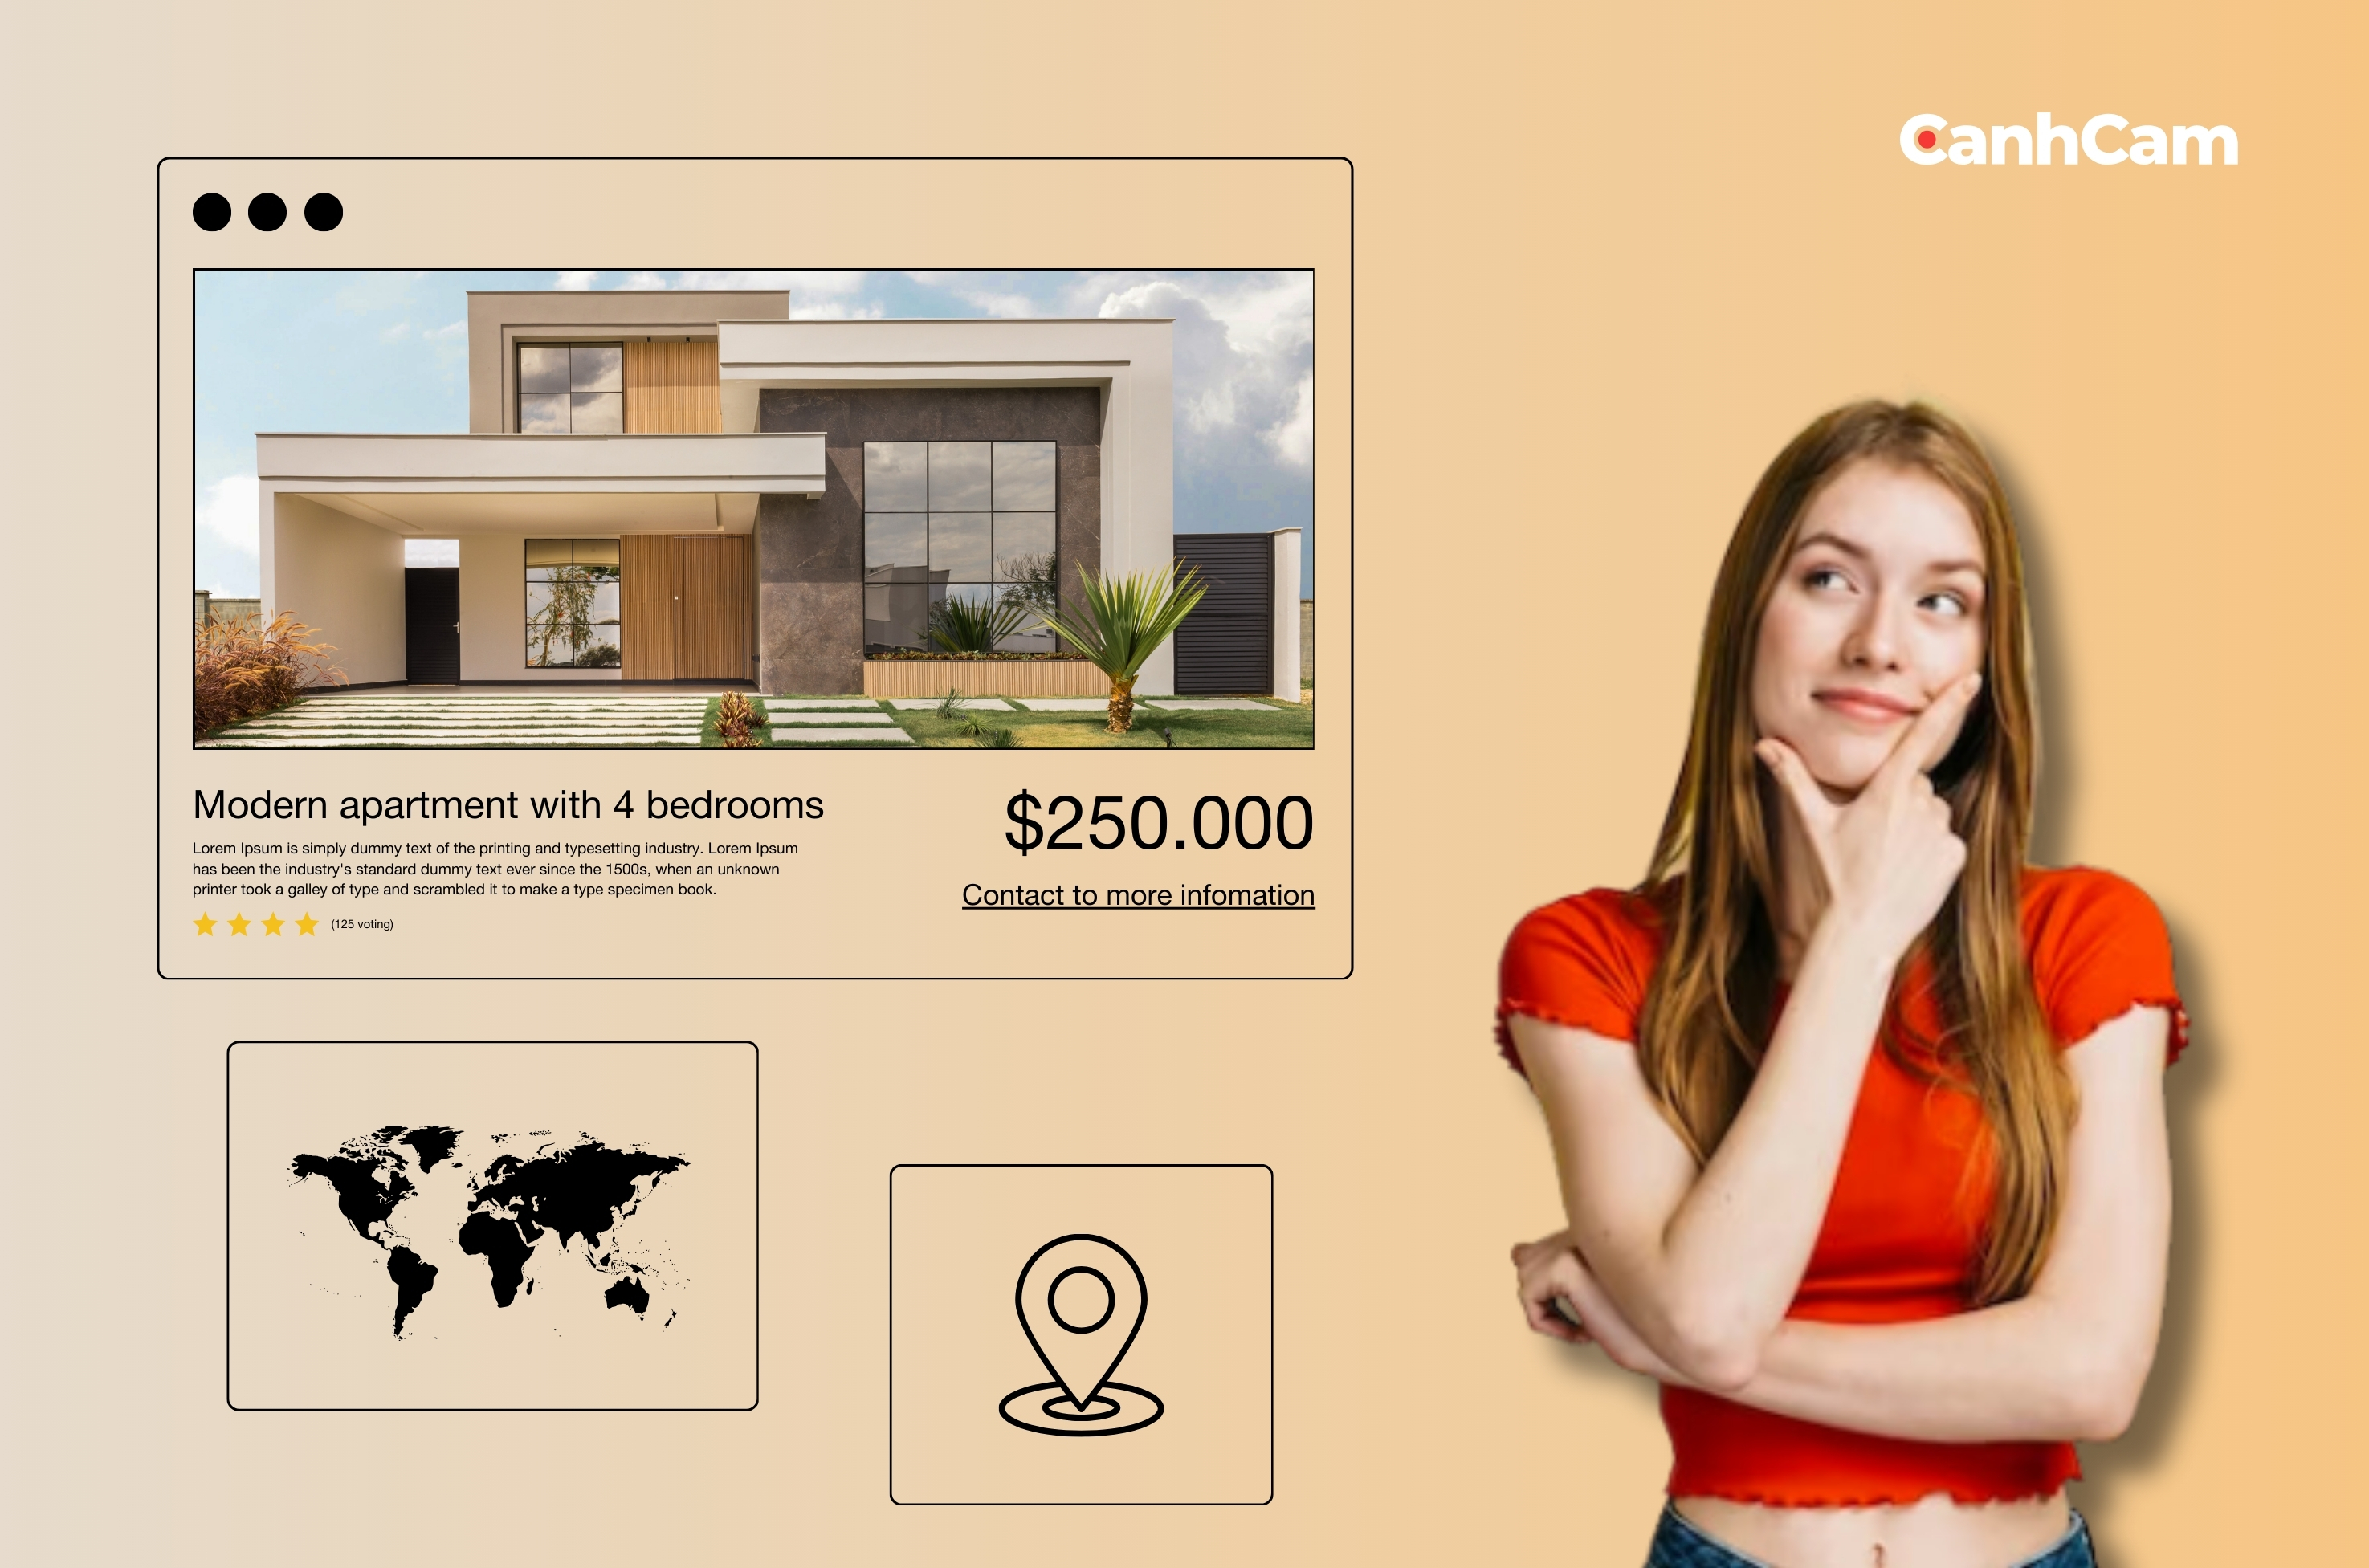 Real Estate Website Design